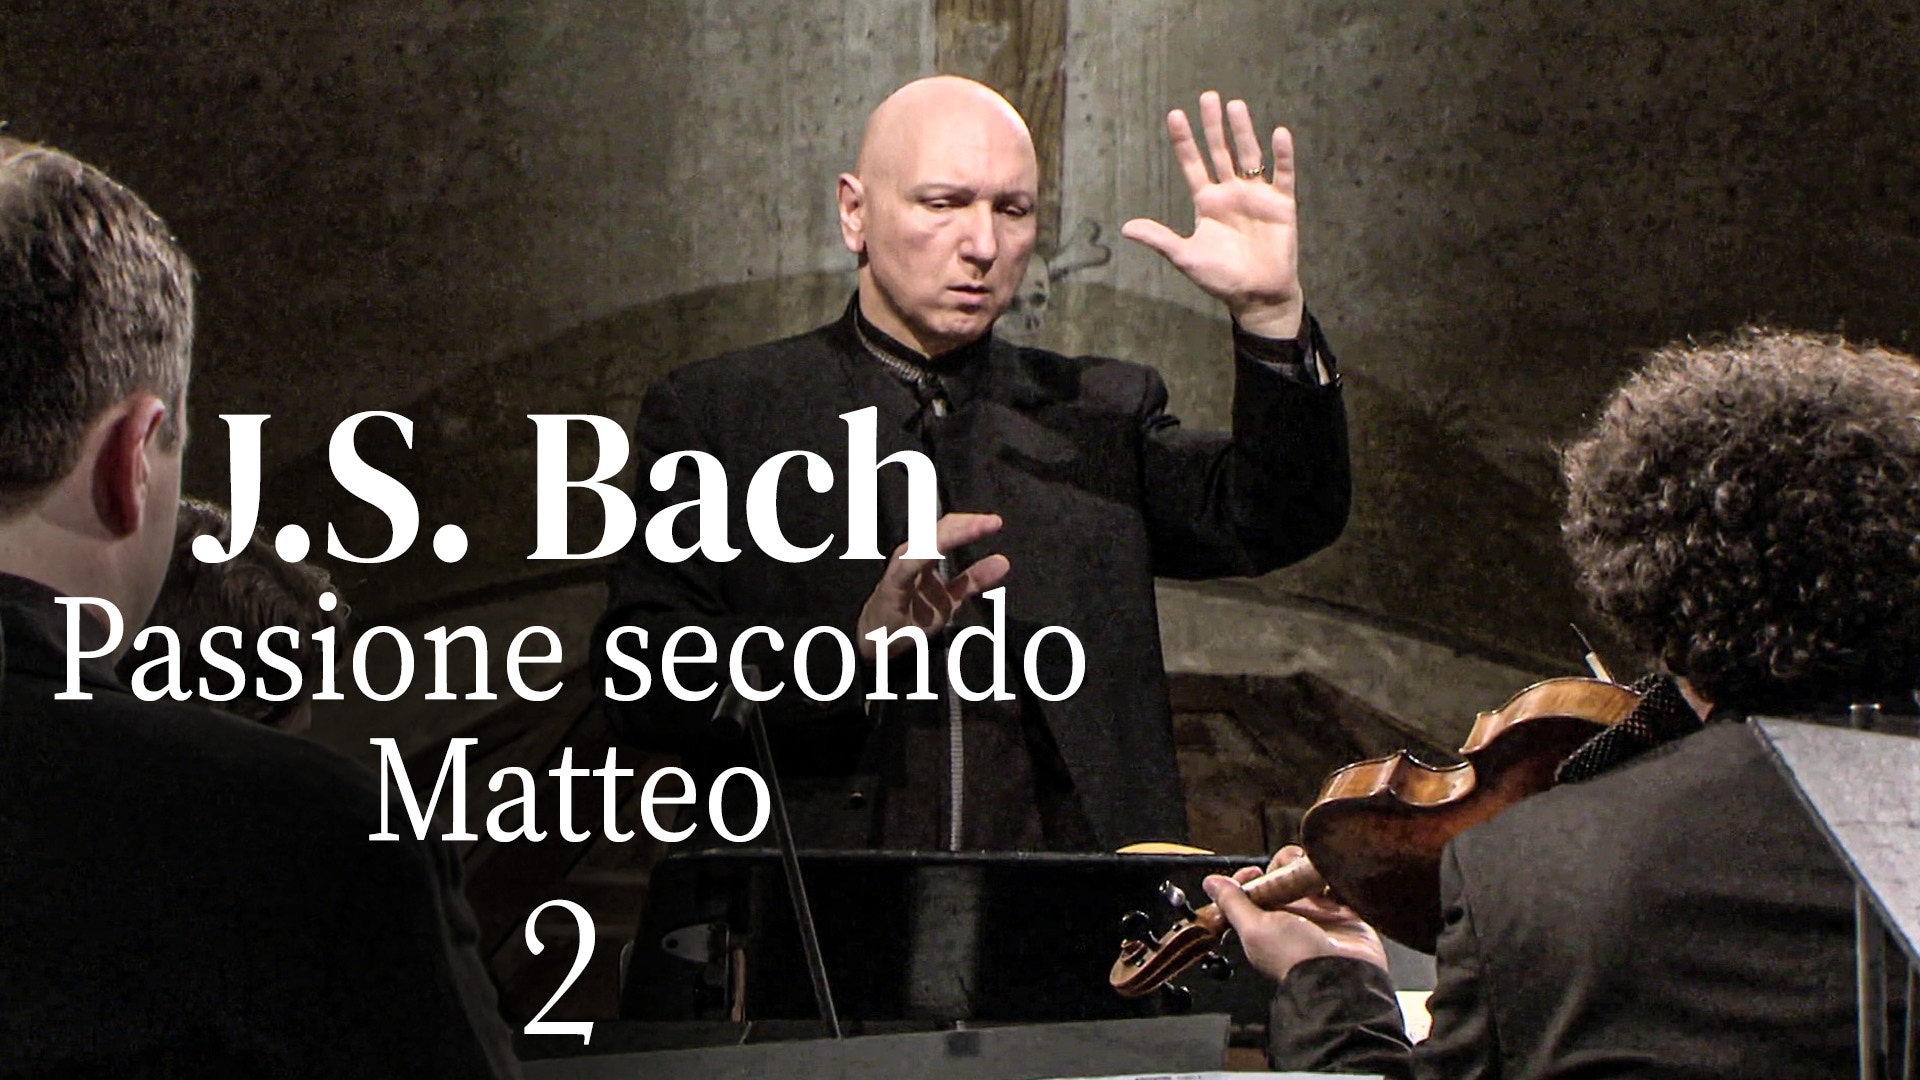 J.S. Bach: Passione secondo Matteo - Seconda parte